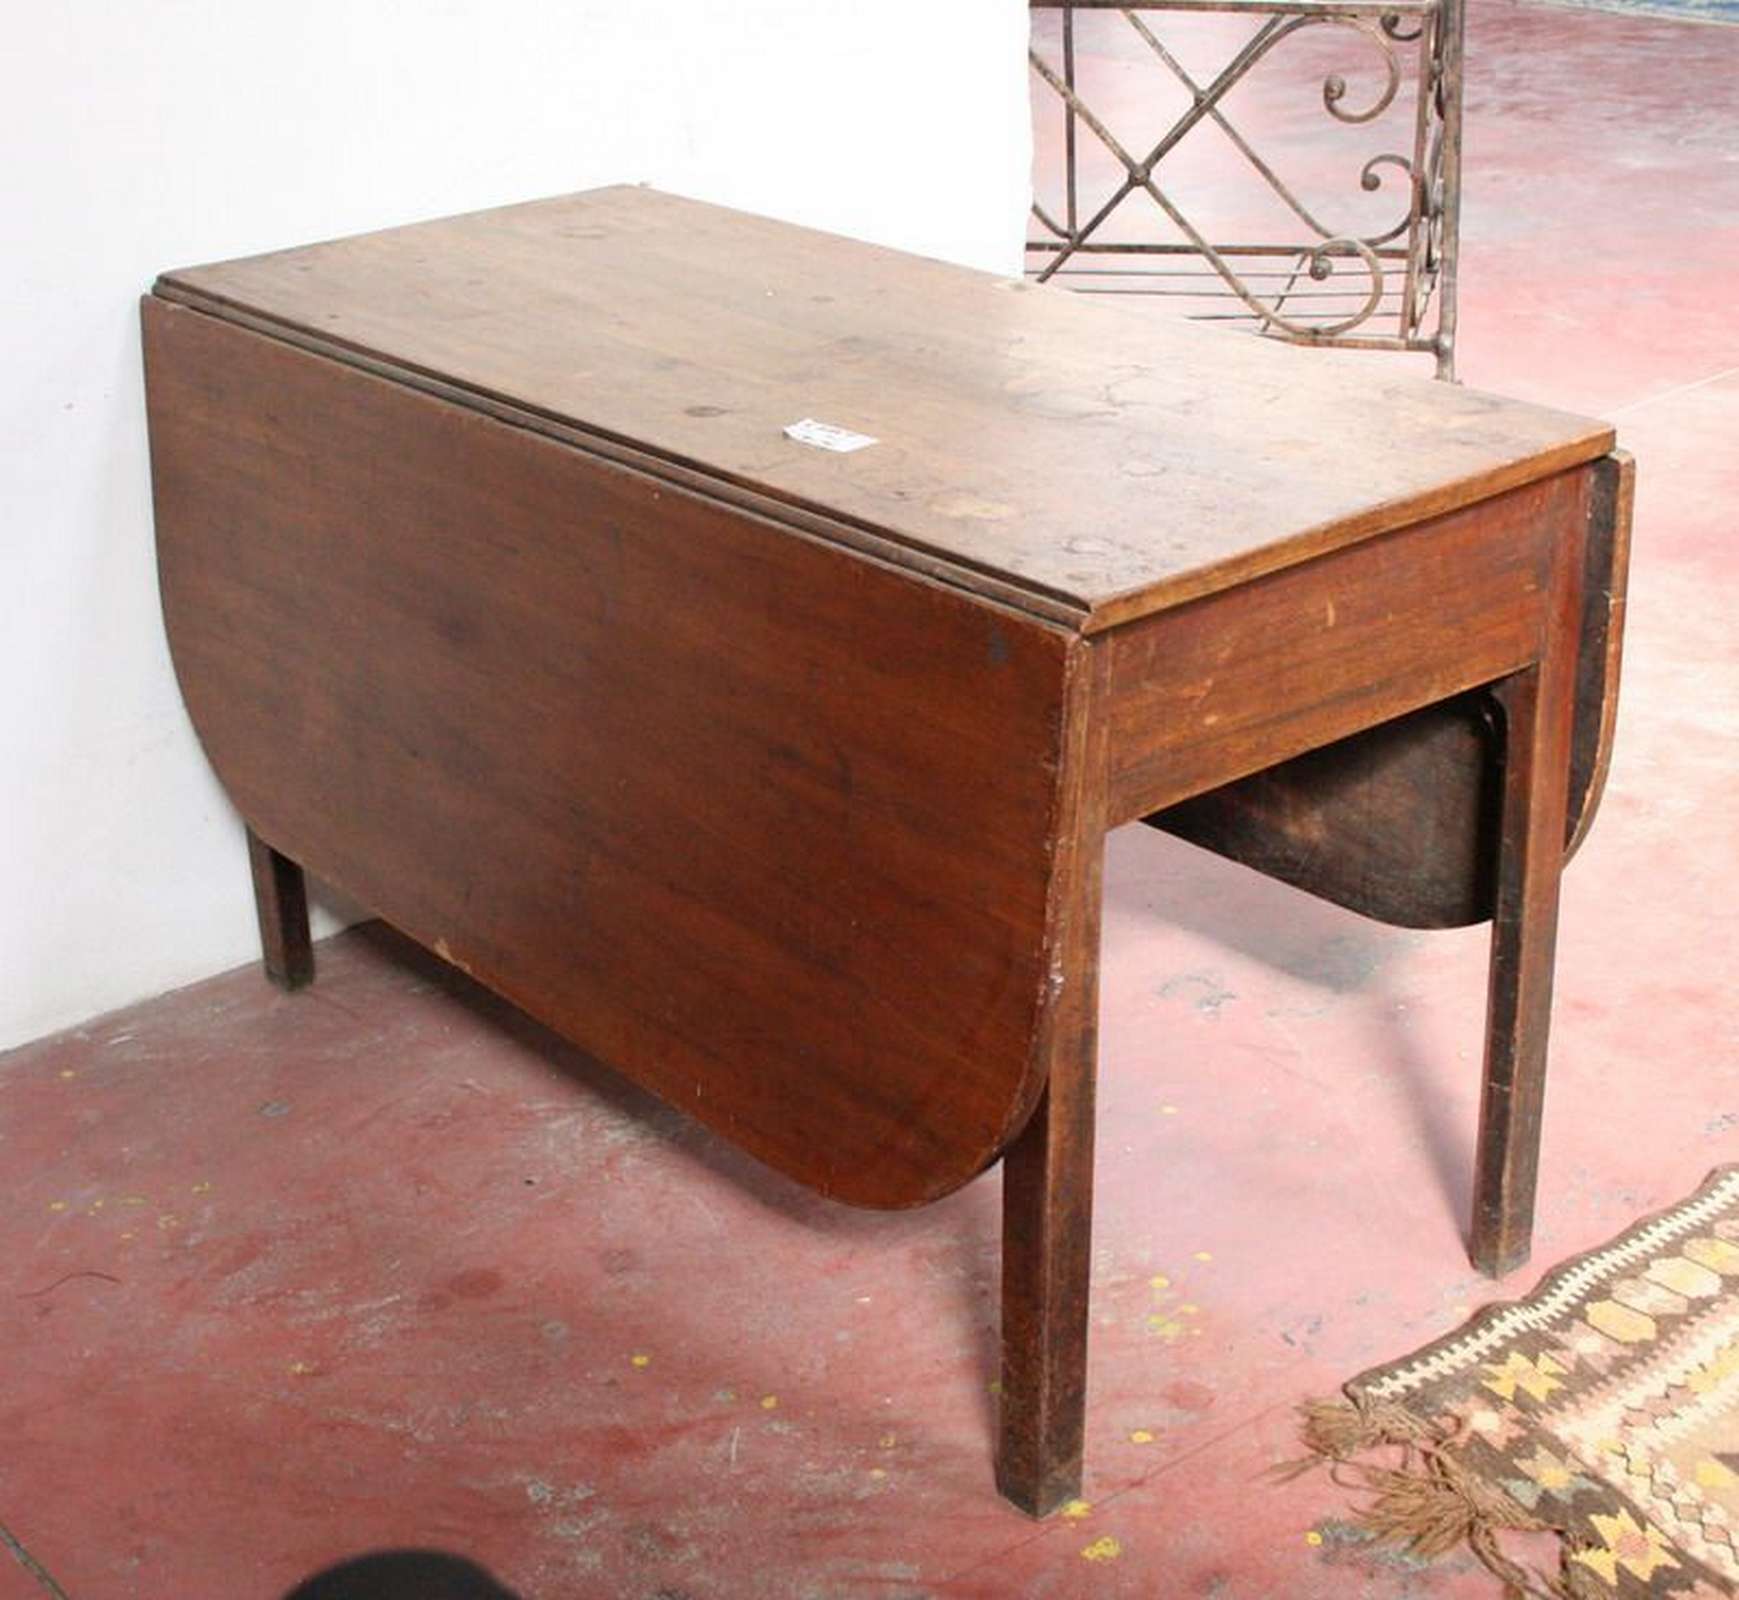 Antico tavolo in legno - Tavoli in legno - Tavoli e complementi - Prodotti - Antichità Fiorillo